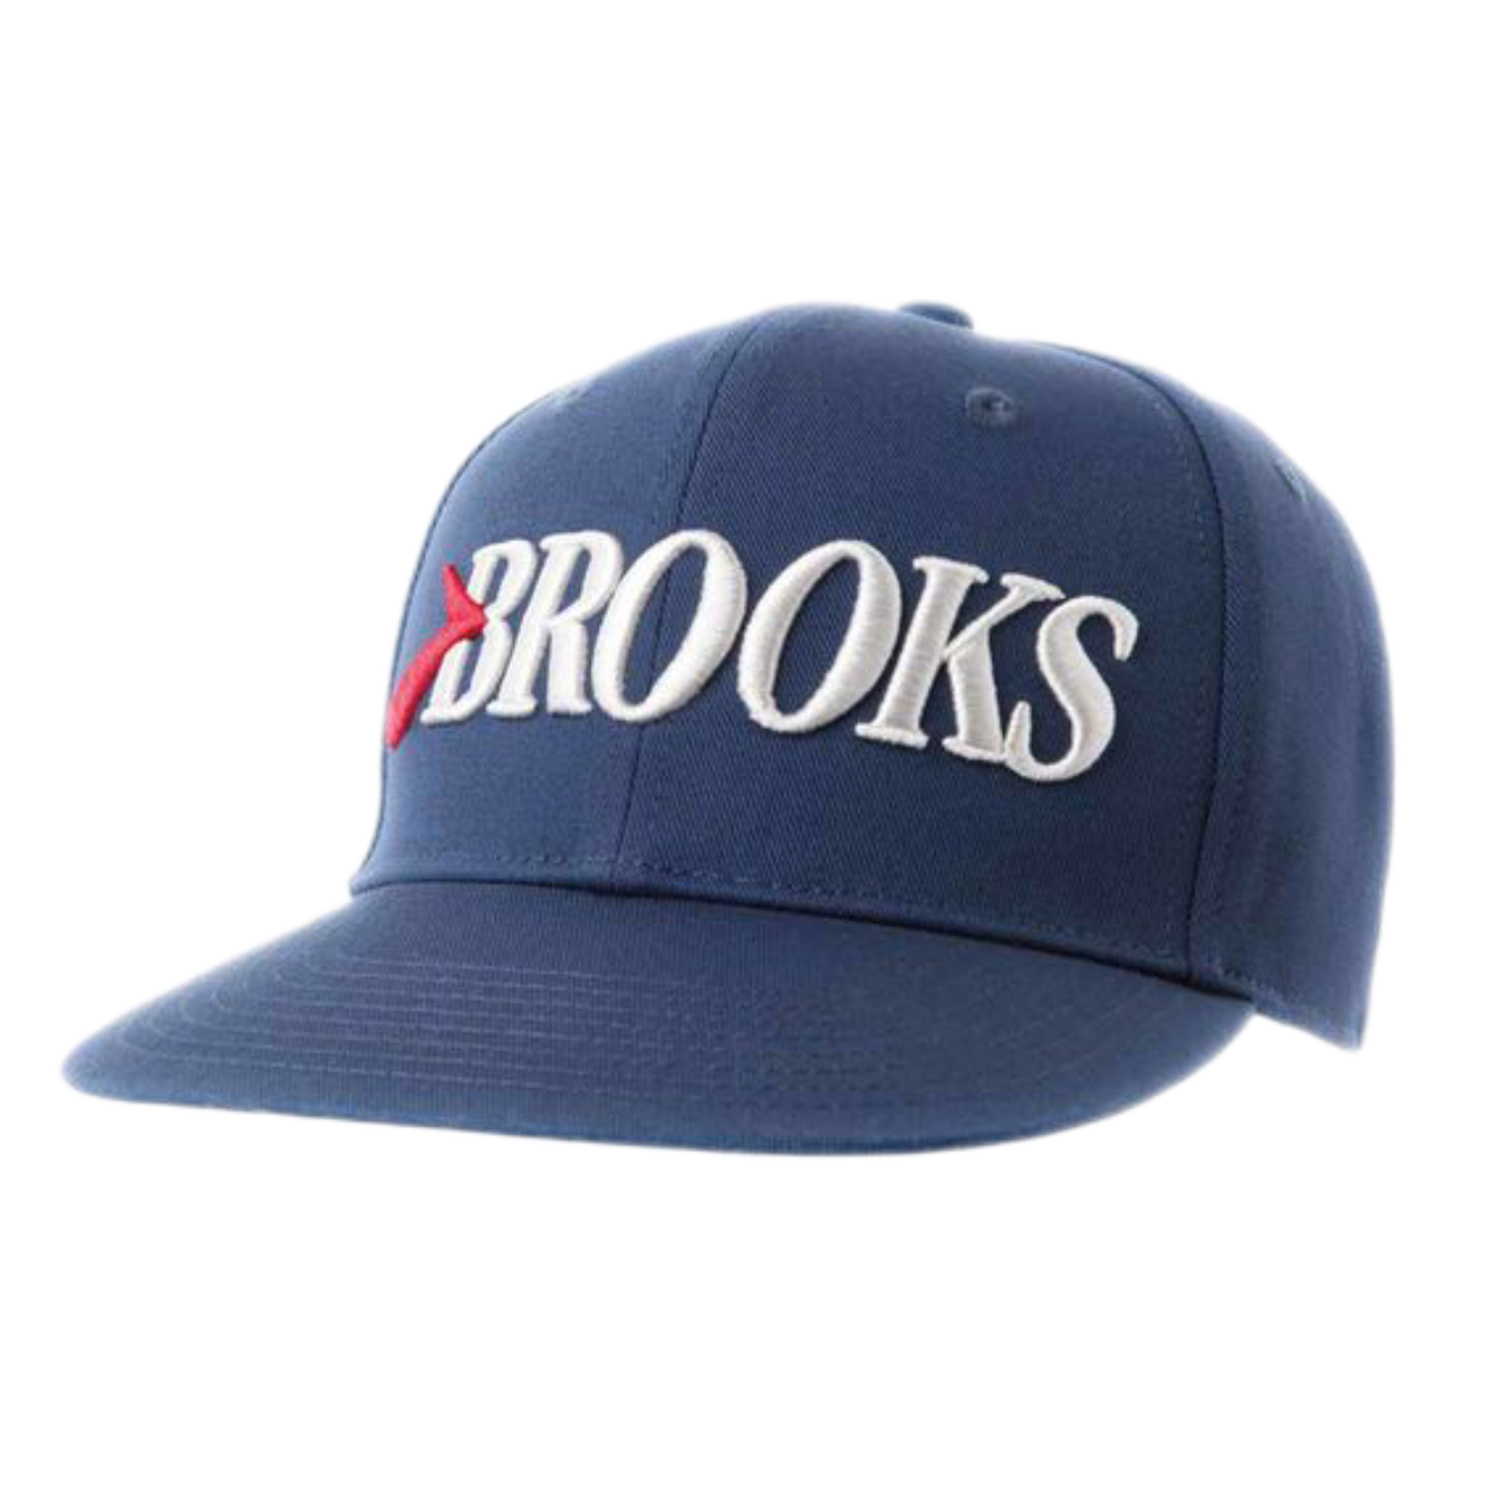 کلاه کپ بروکس مدل تابستانی کد 001002